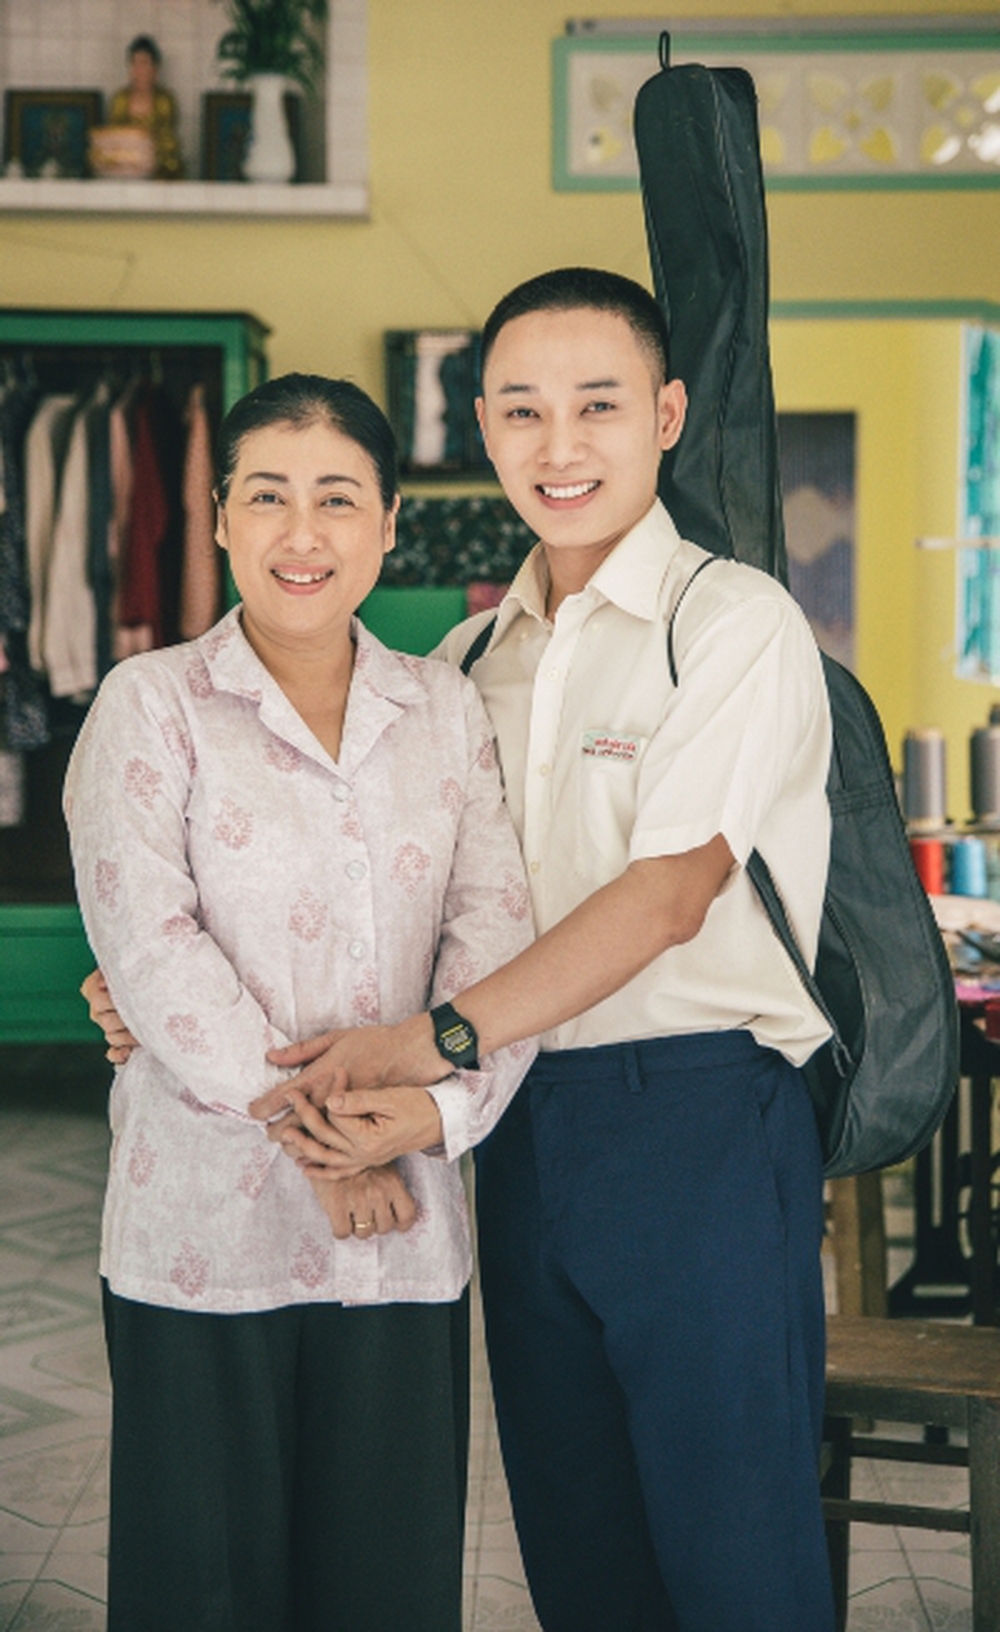 Dàn sao Người Mẹ Nhí sau 16 năm: Angela Phương Trinh thay đổi chóng mặt, 1 nữ diễn viên hạnh phúc bên trời Tây - Ảnh 13.